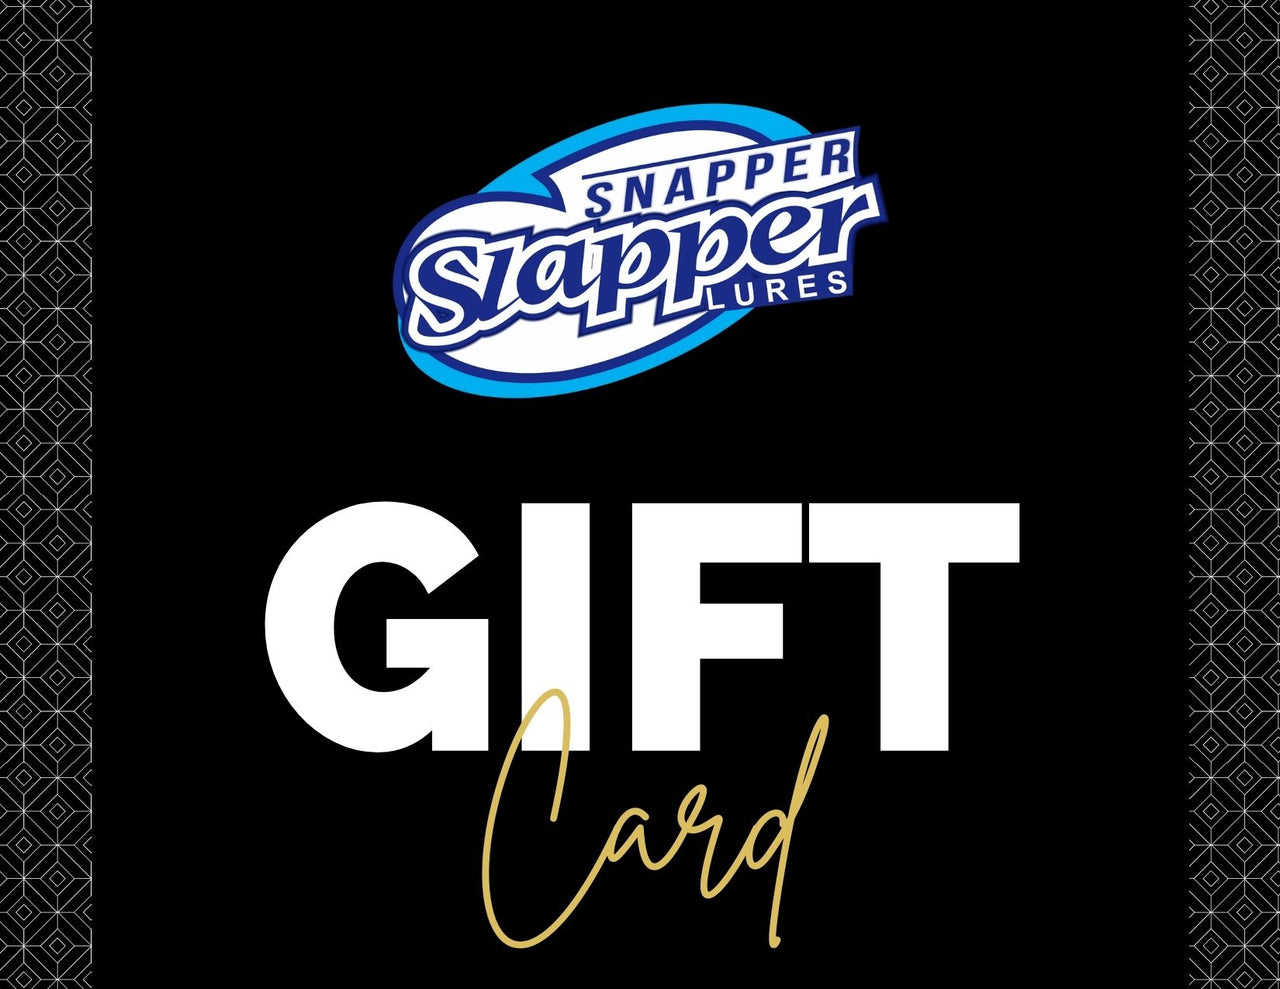 Snapper Slapper Gift Cards